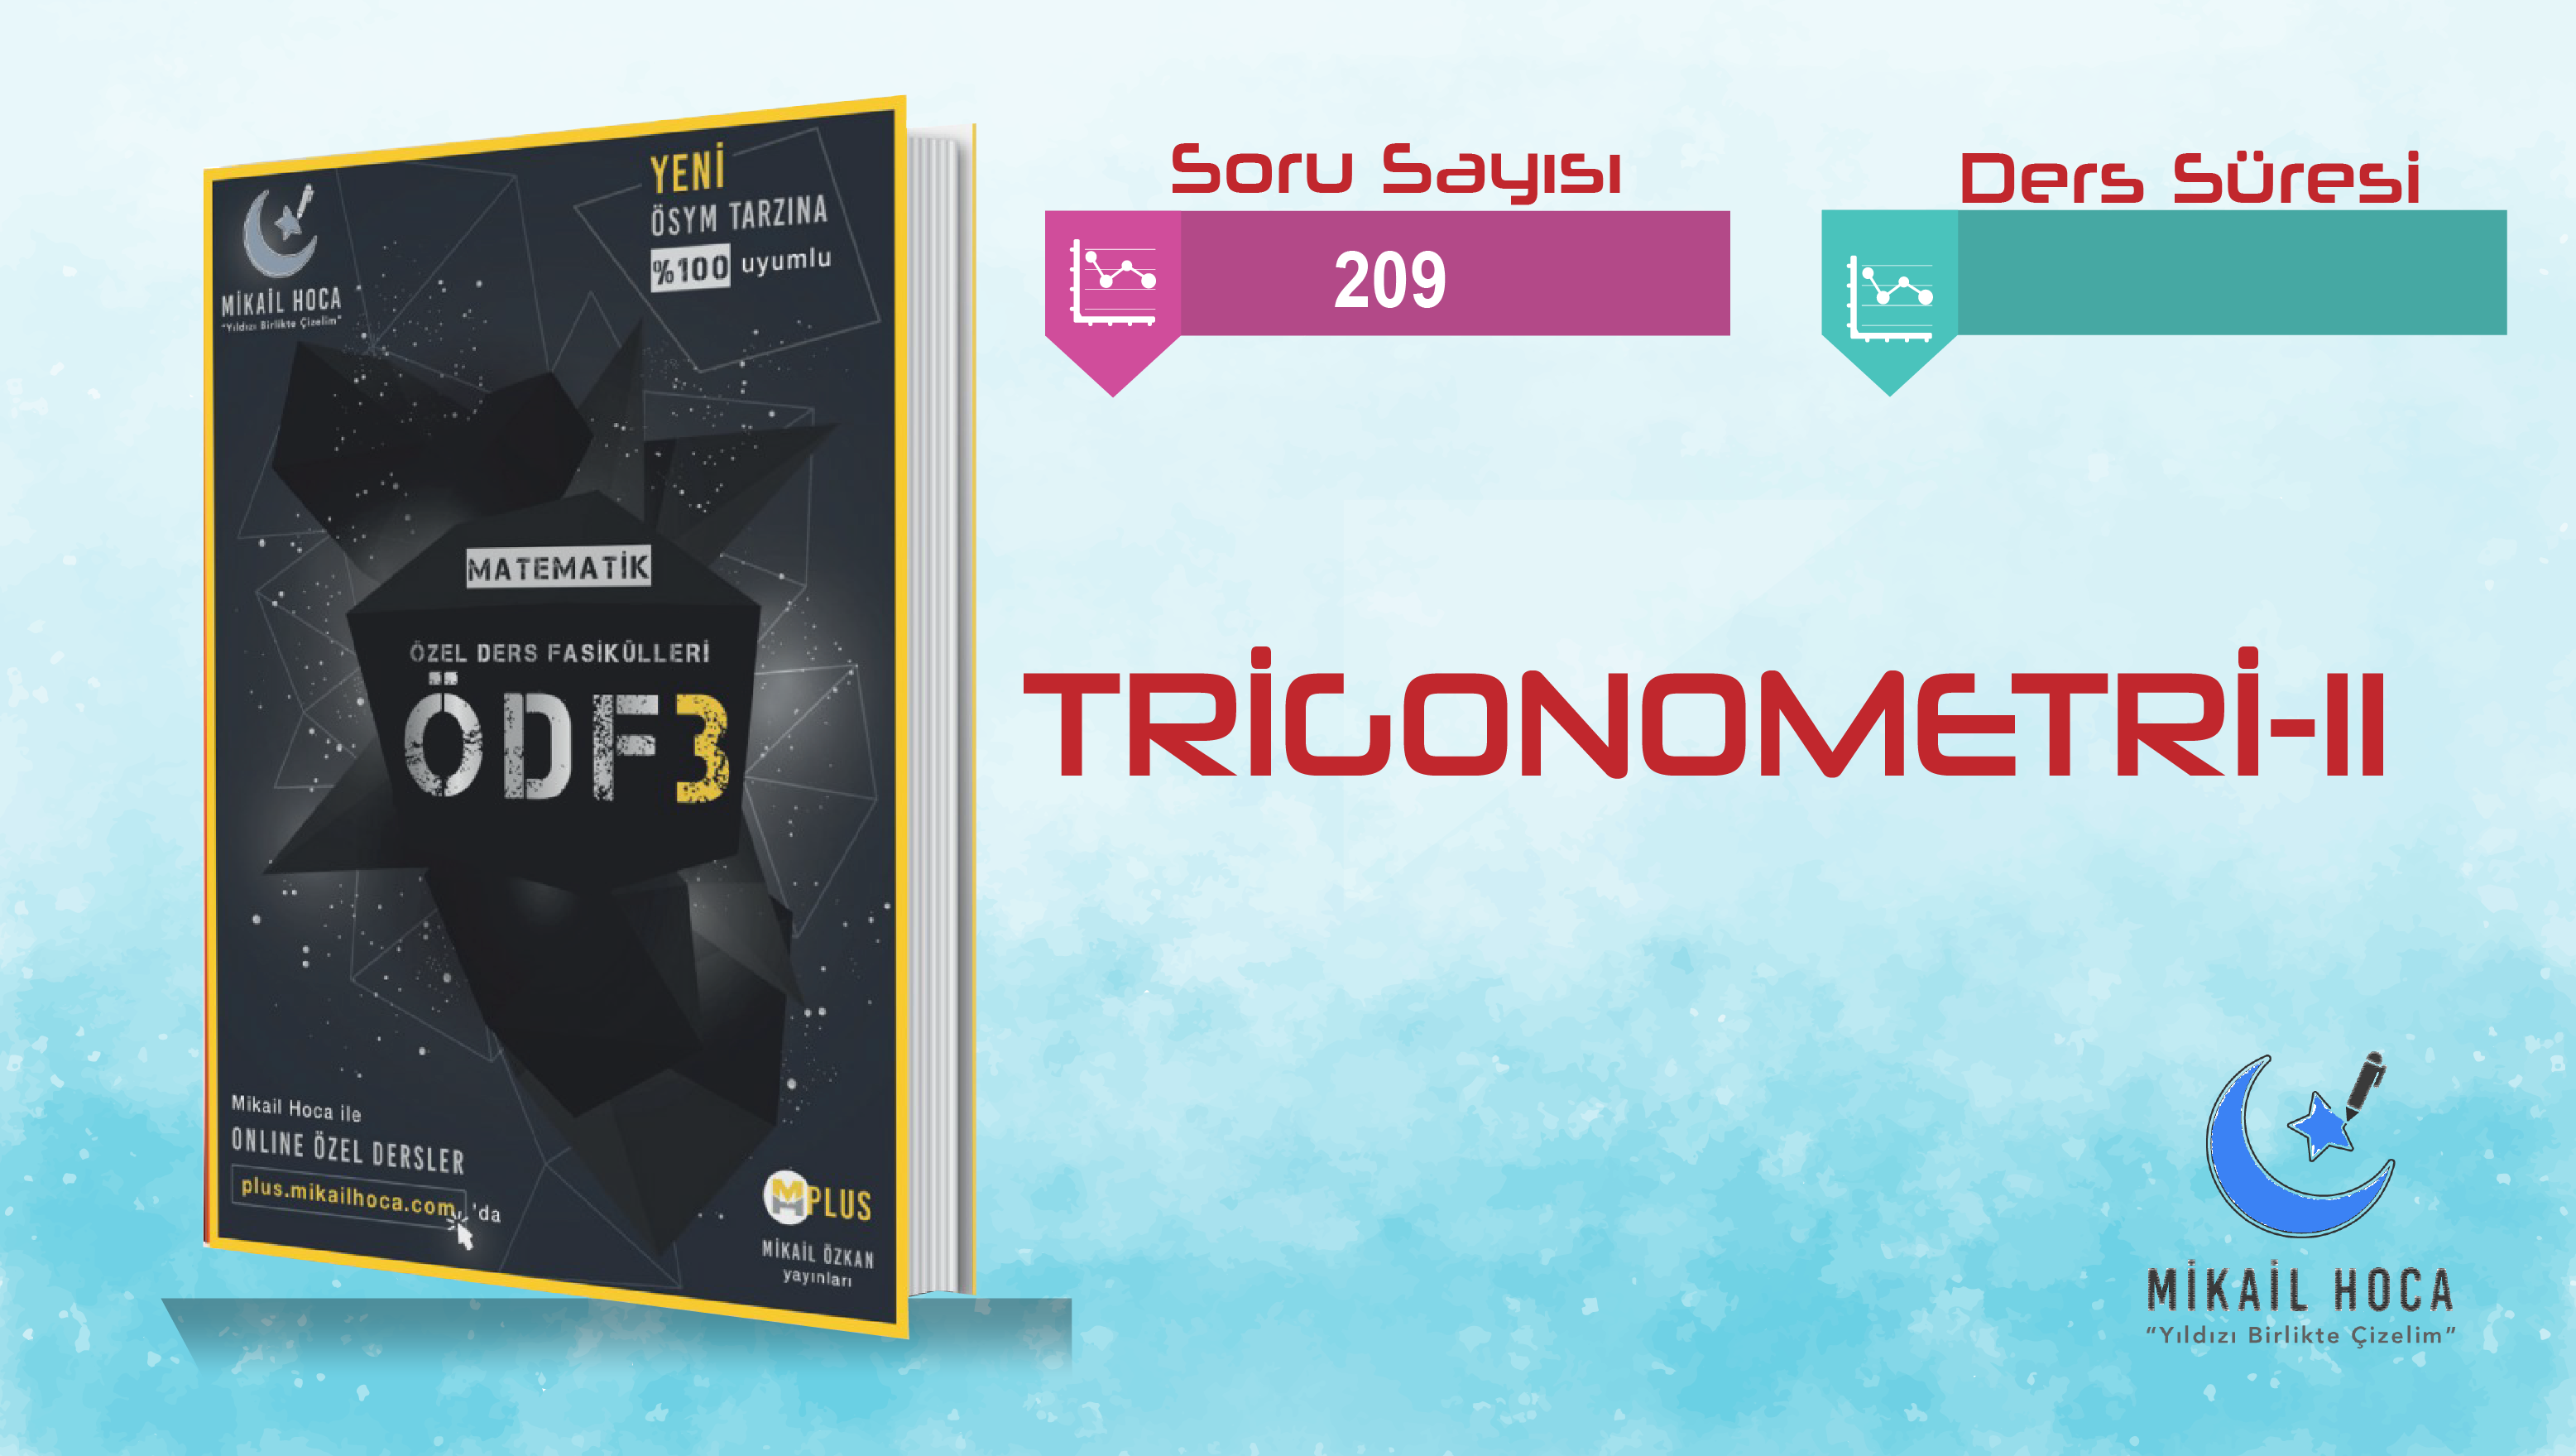 TRİGONOMETRİ 2 ÖDF-3